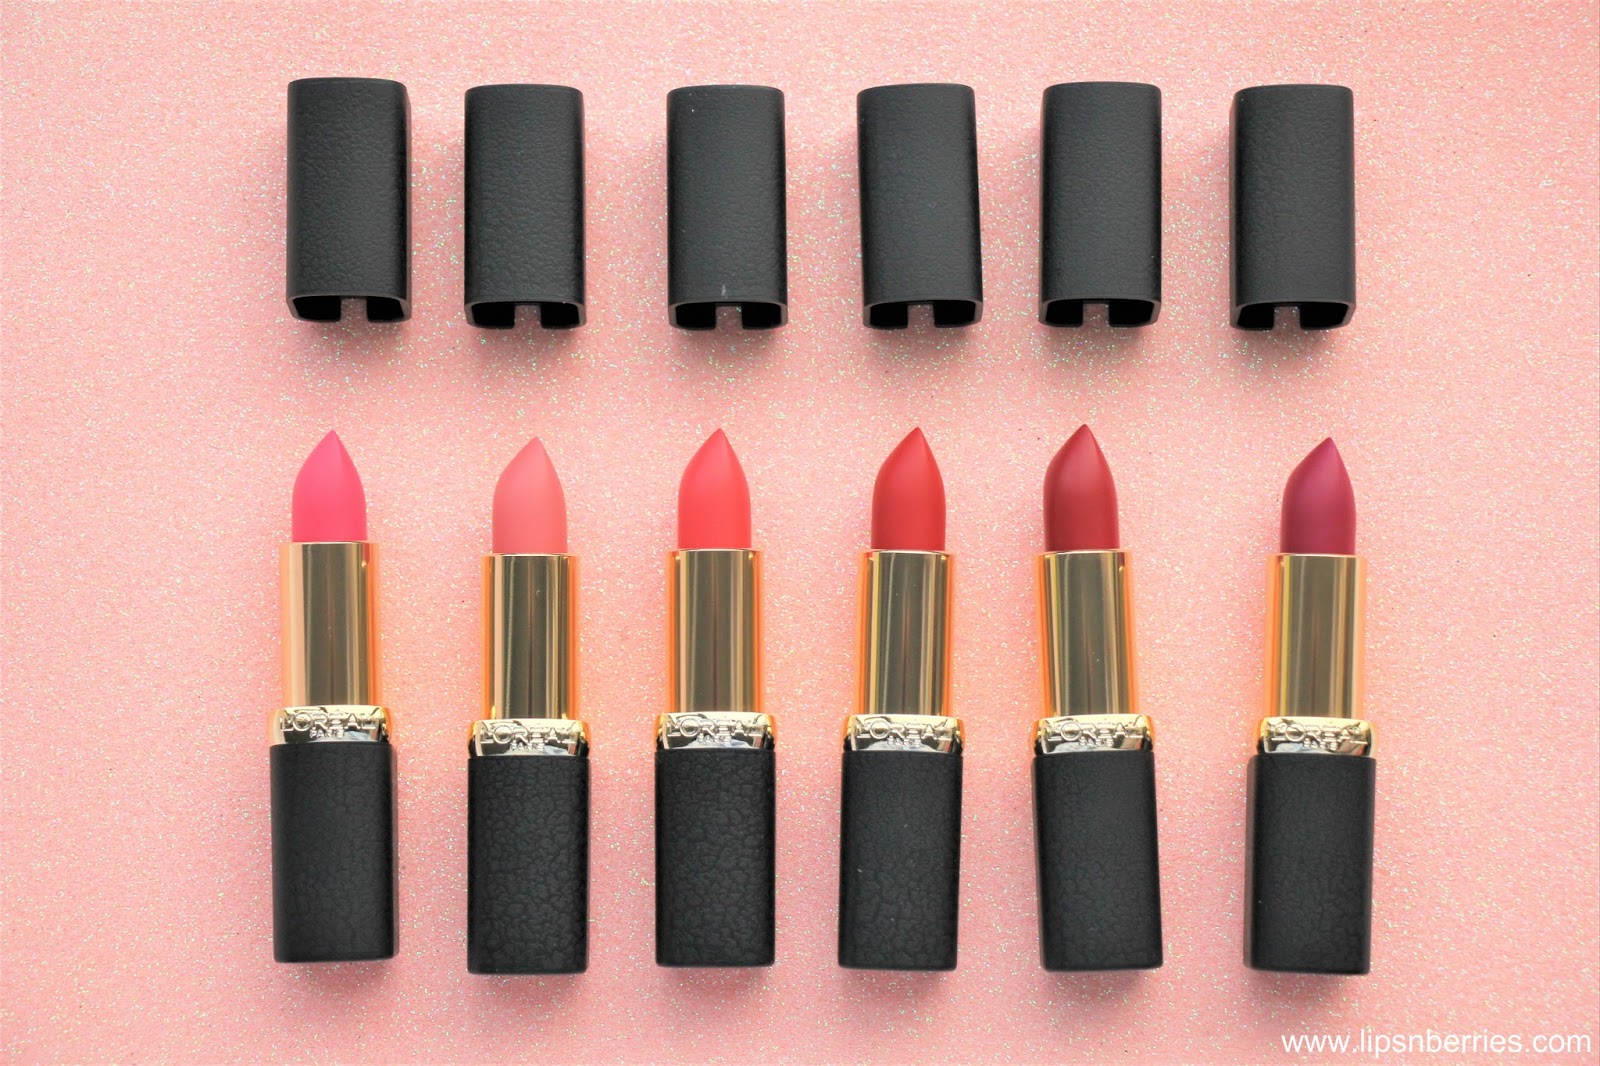 L'oreal Paris Color Riche Matte Addiction Lipsticks Review | LIPS n BERRIES